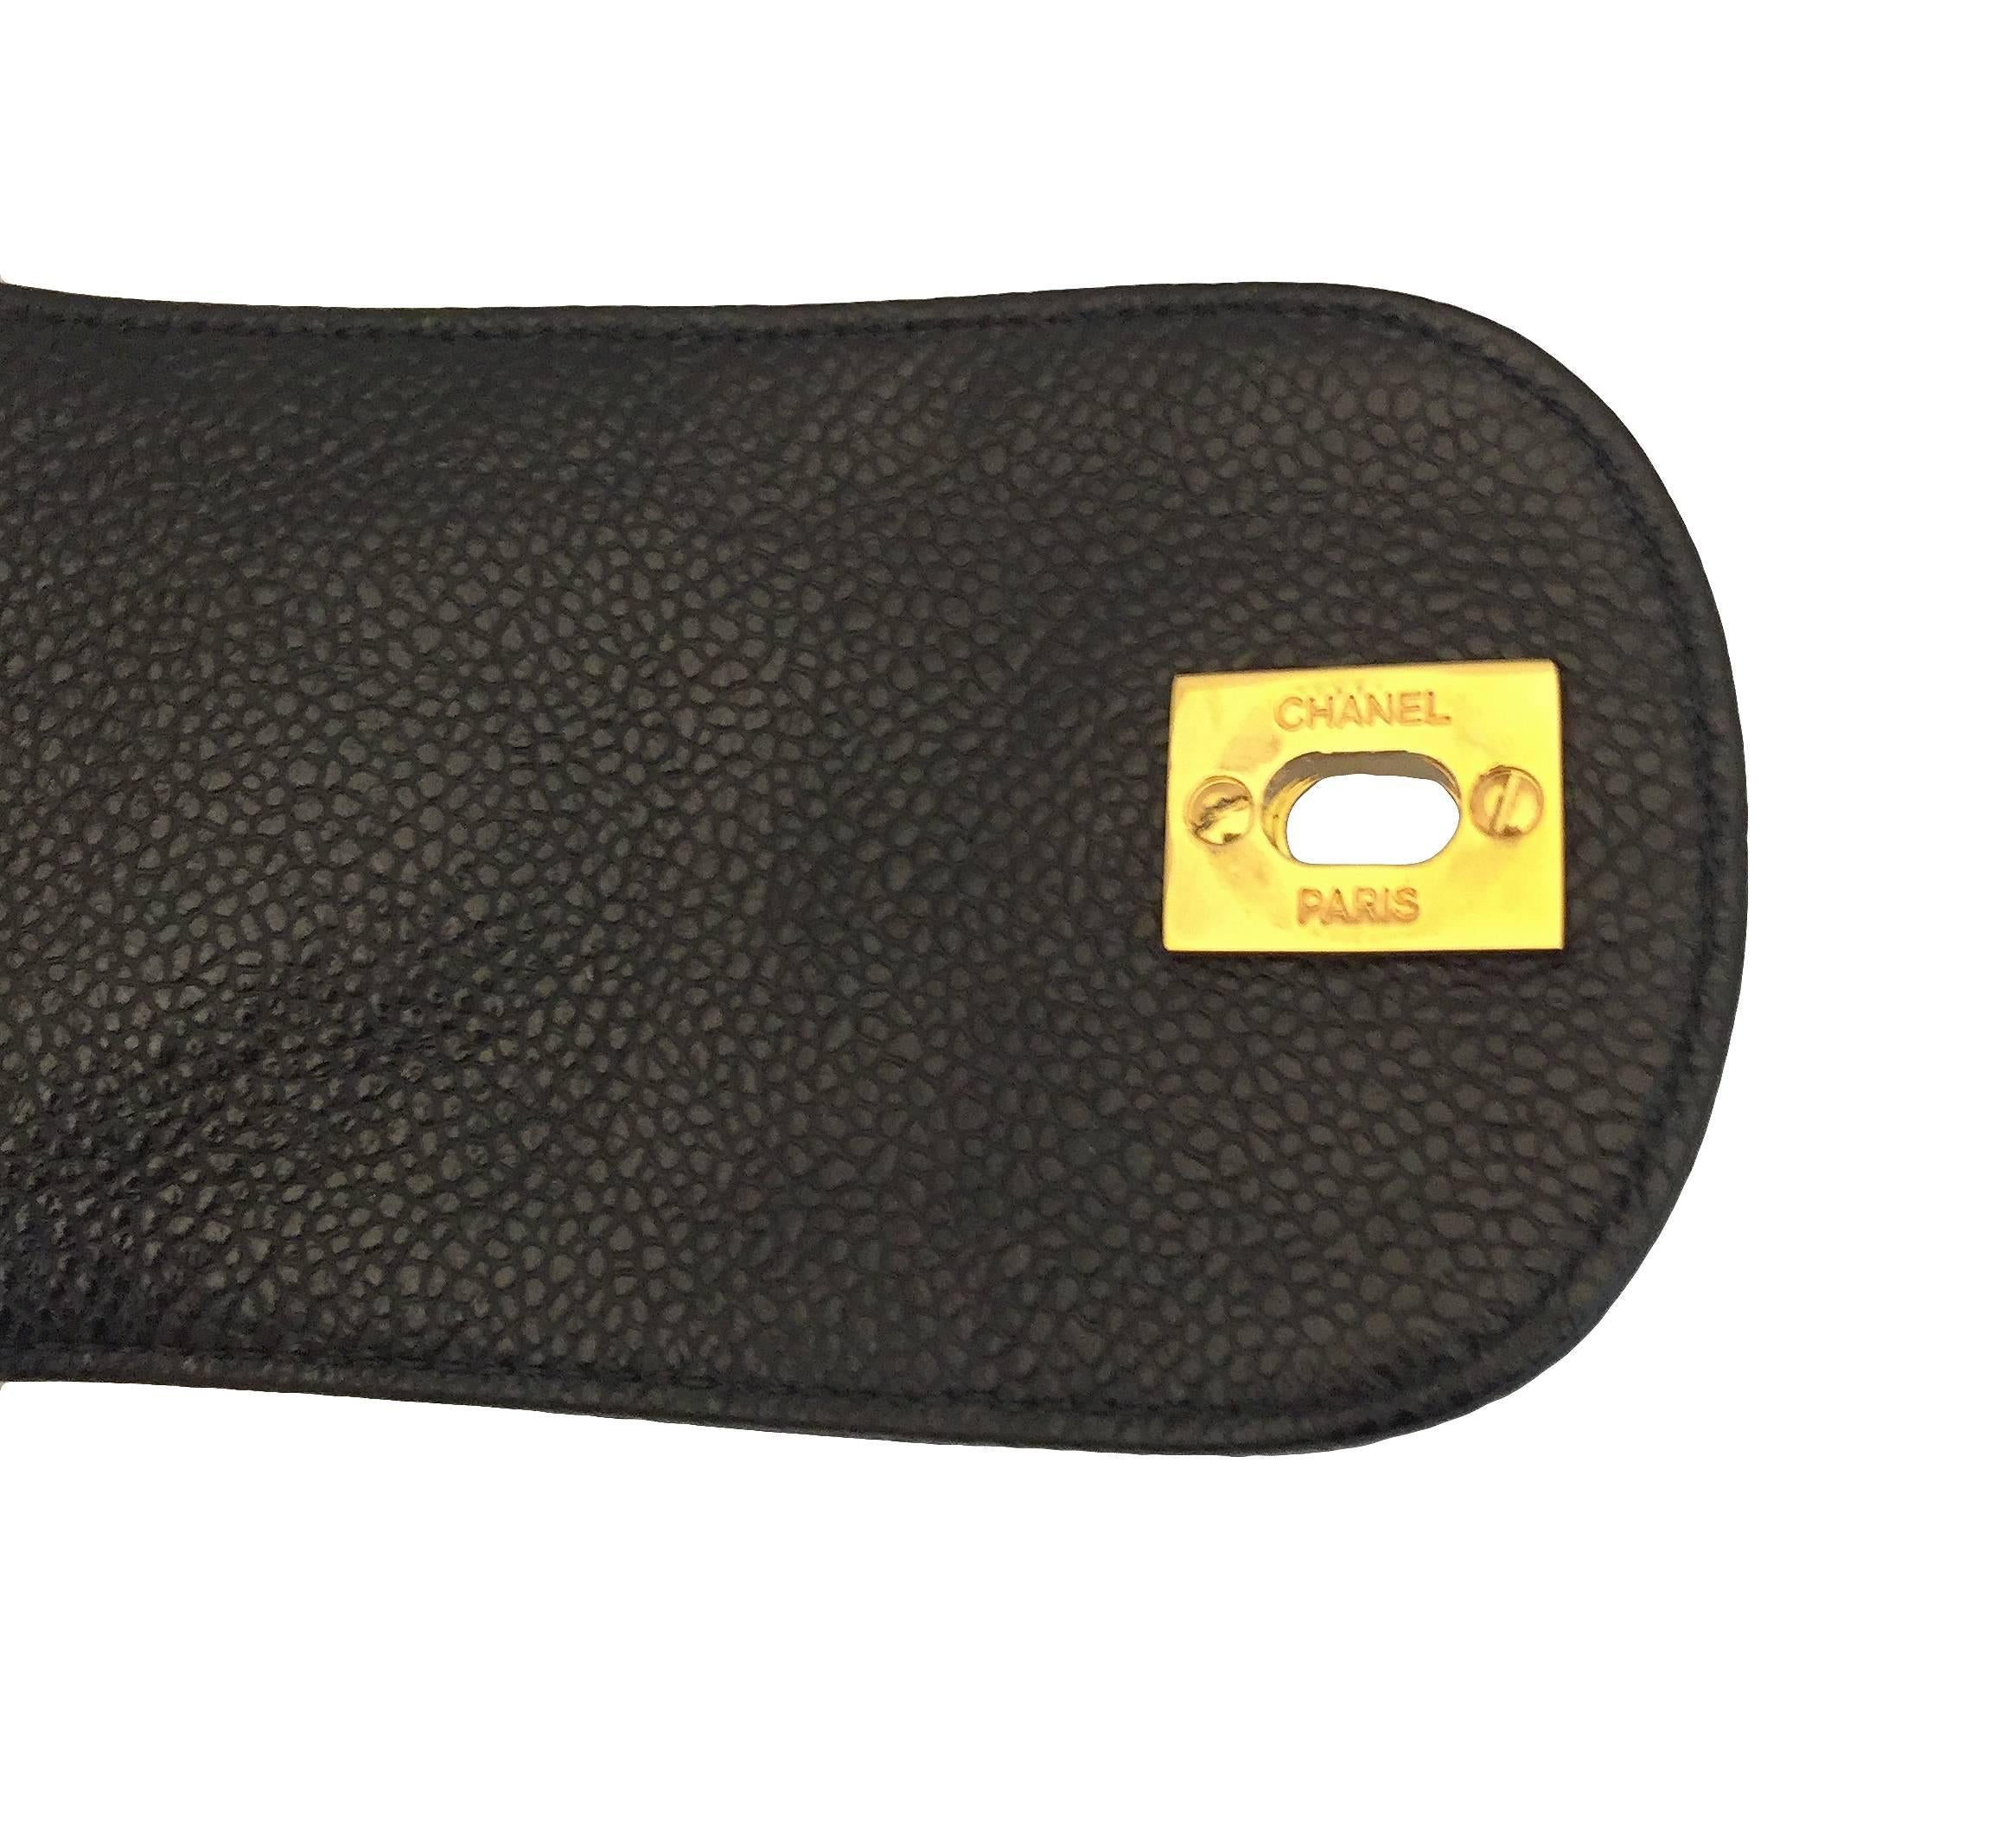 Chanel Black Caviar Leather Umbrella Case, 1995 For Sale 3